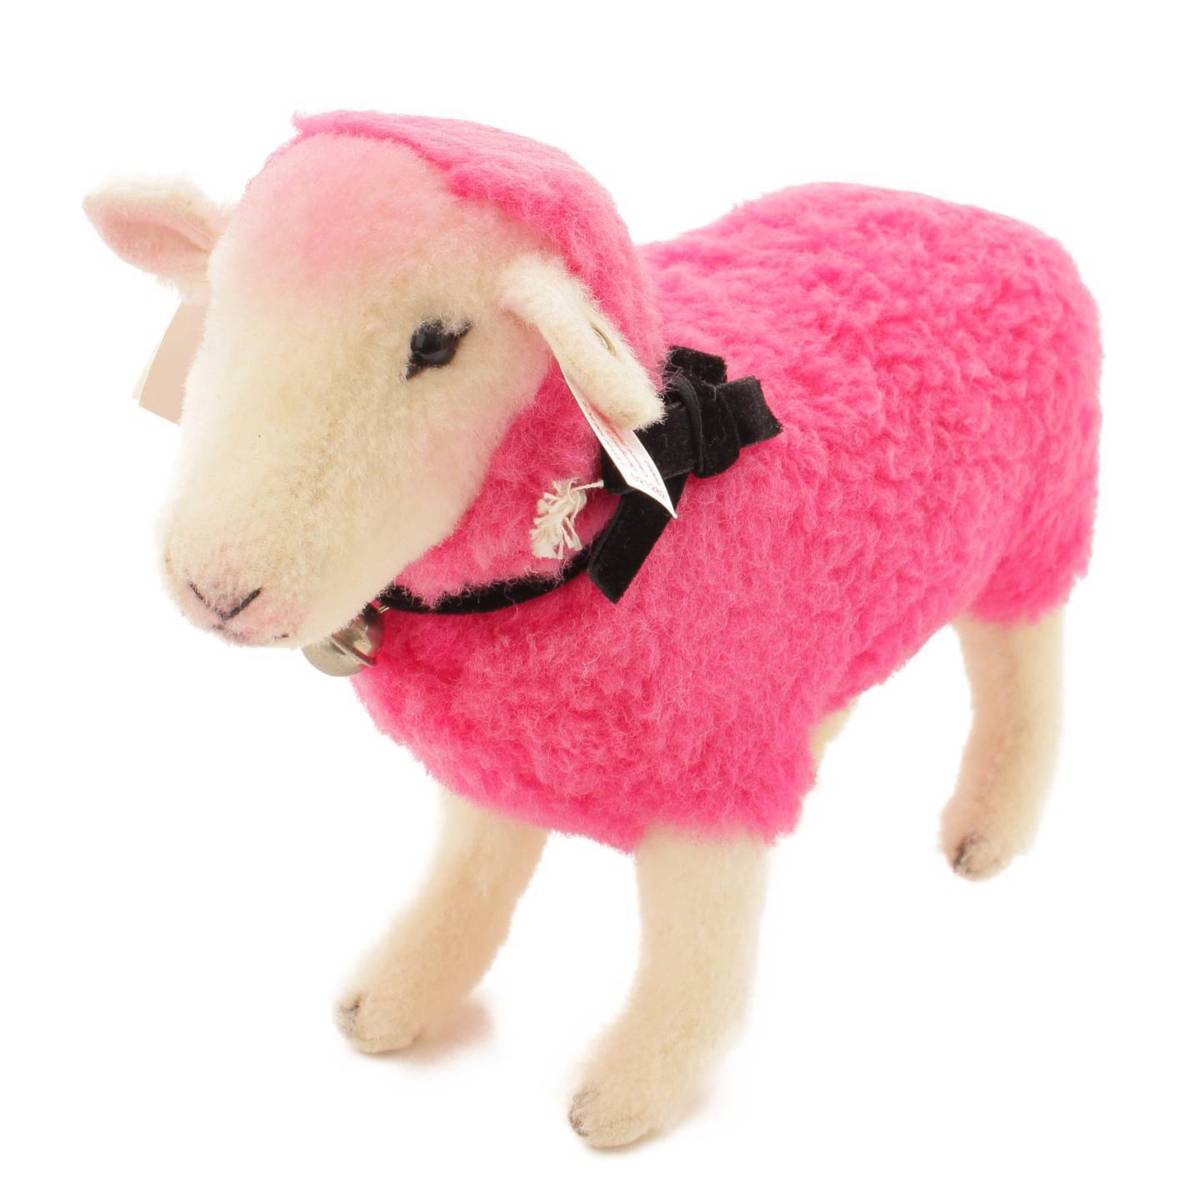 シュタイフ(Steiff) 羊のピンキー 500体限定 ぬいぐるみ 021282 ピンク